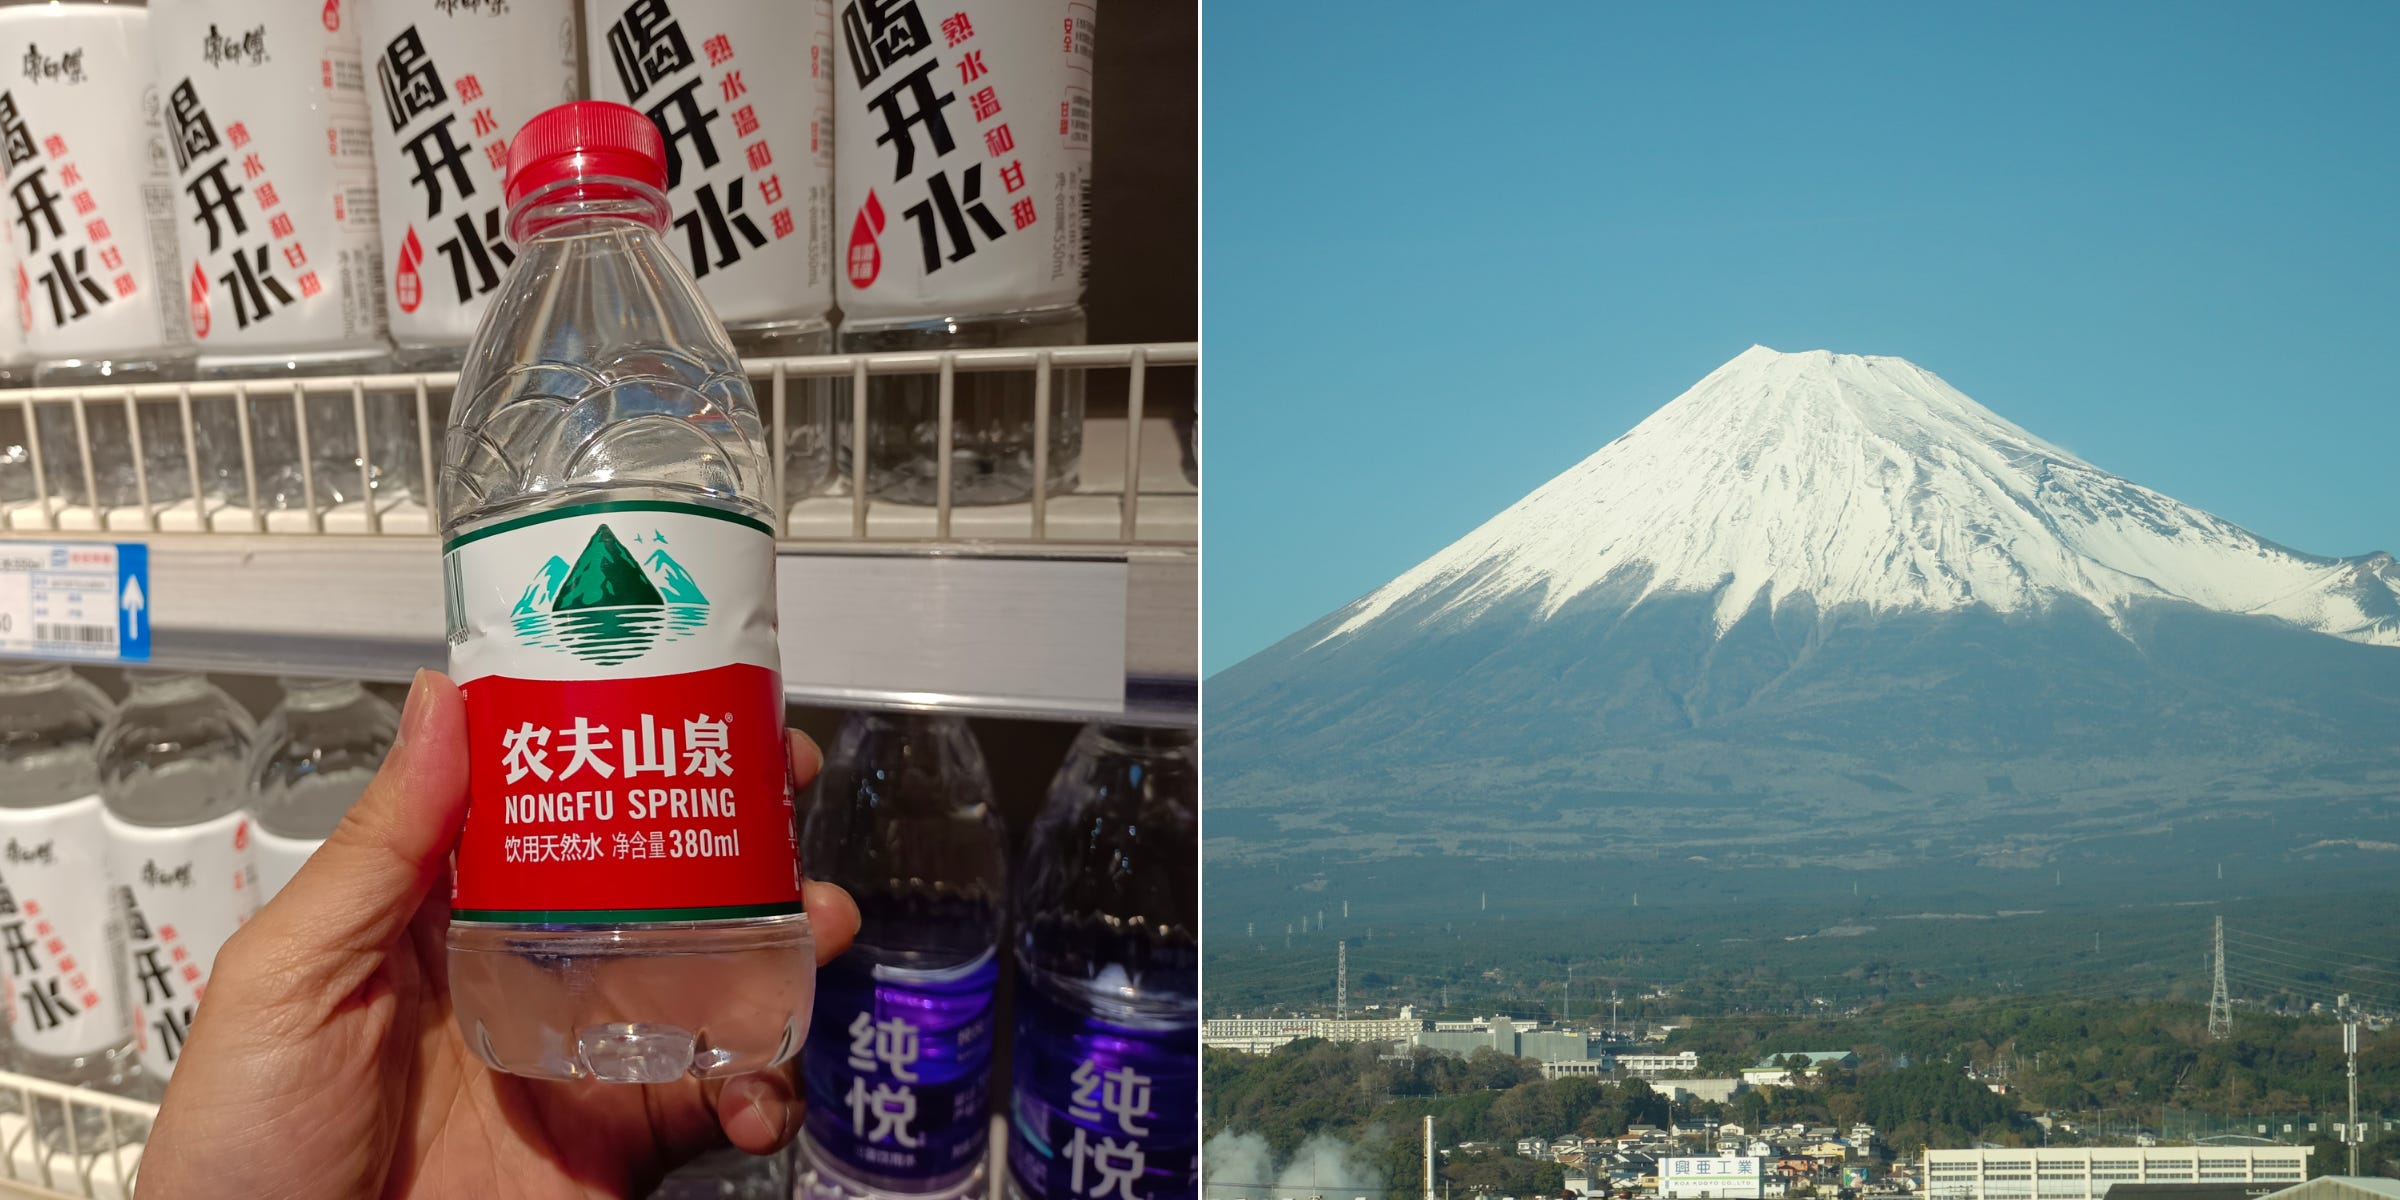 Im Internet denken Menschen, dass das Logo von Nongfu Spring wie der Berg Fuji aussieht.